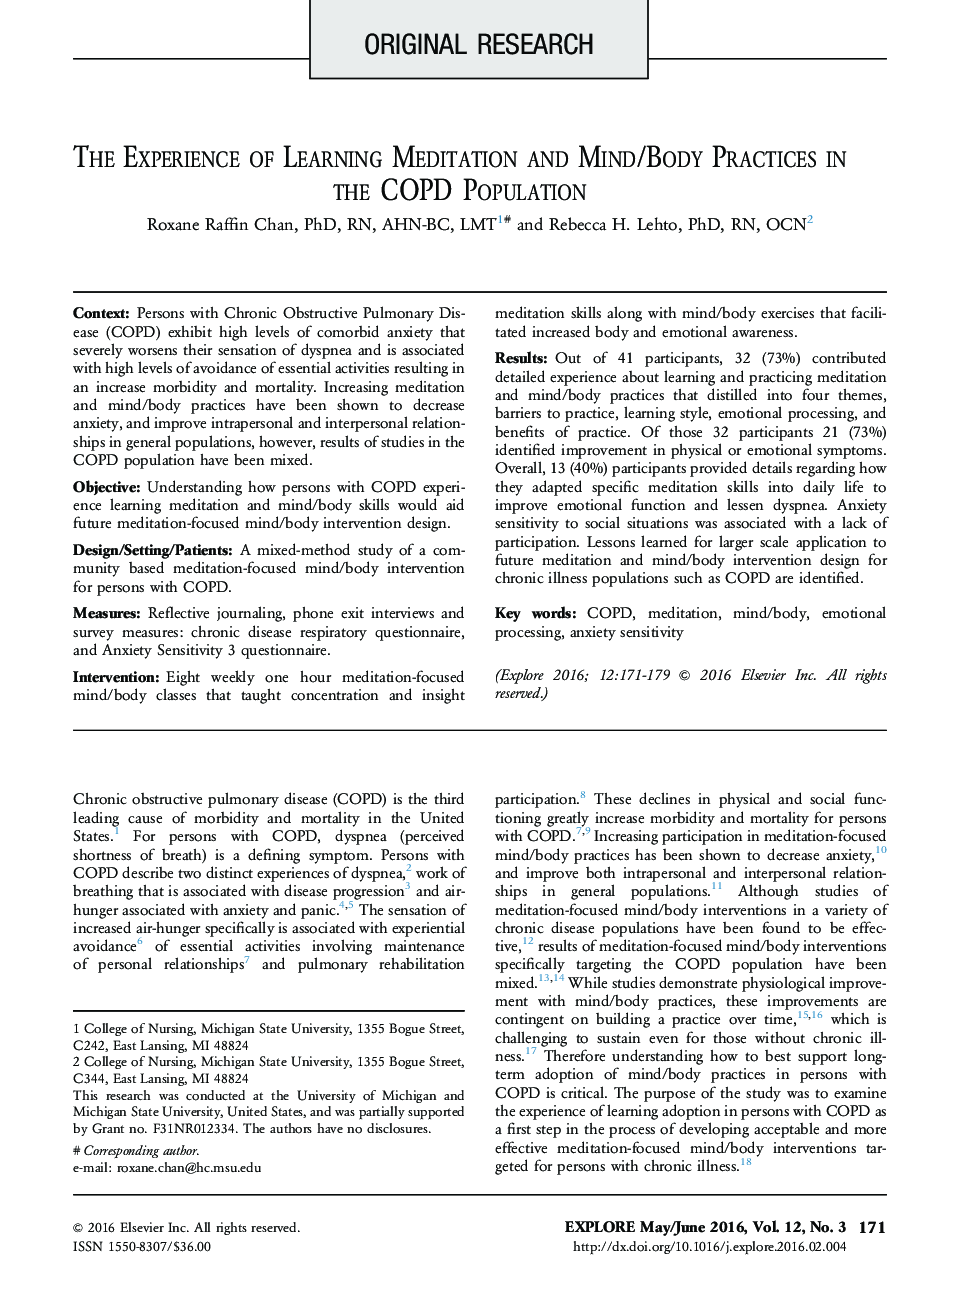 تجربه یادگیری مدیتیشن و تمرین ذهن/بدن در جمعیت COPD